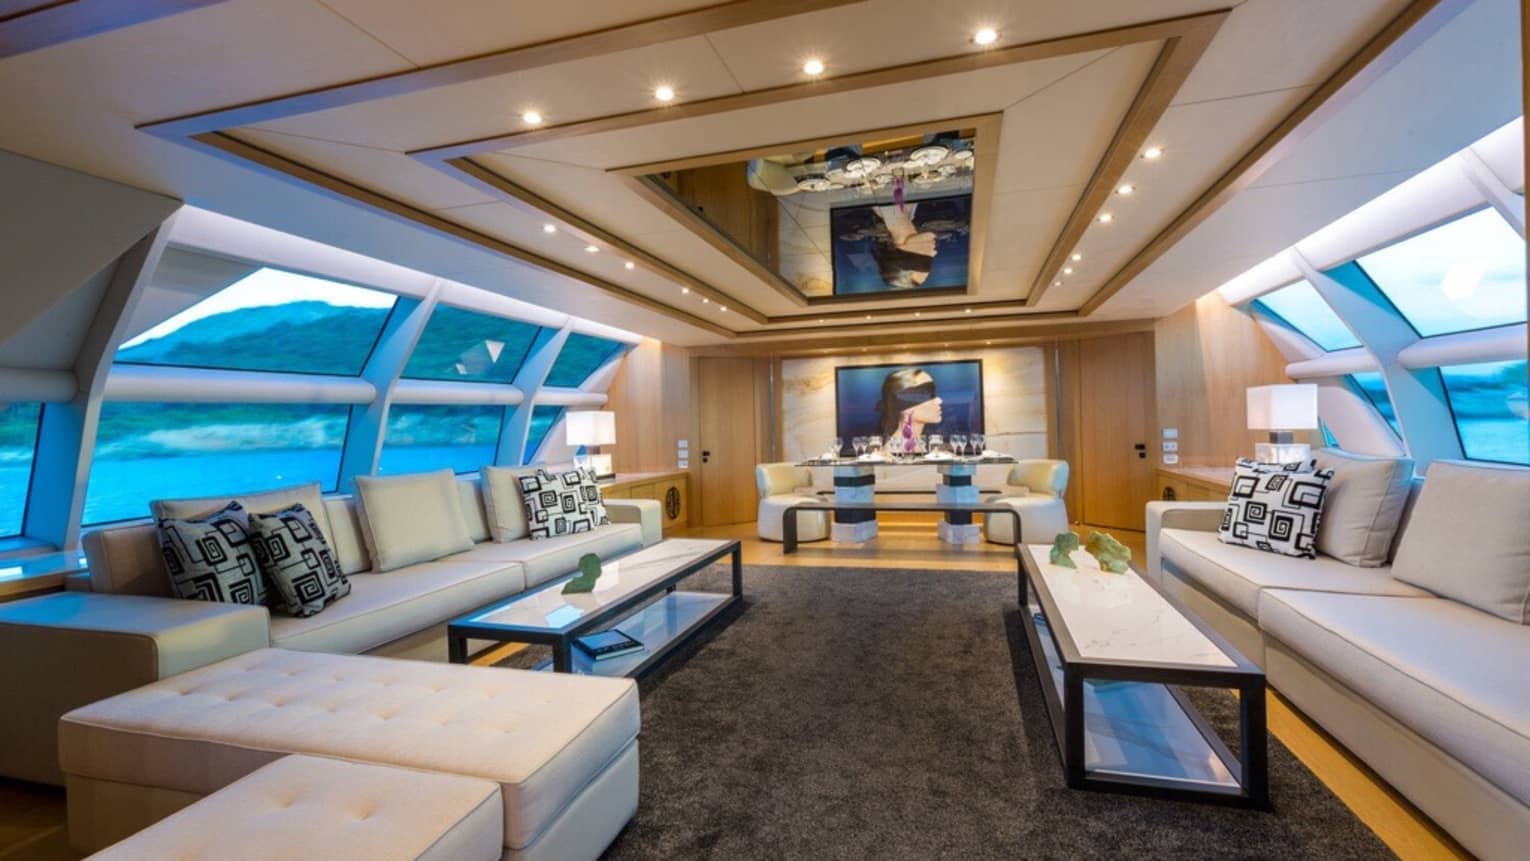 Sleek interior salon of yacht